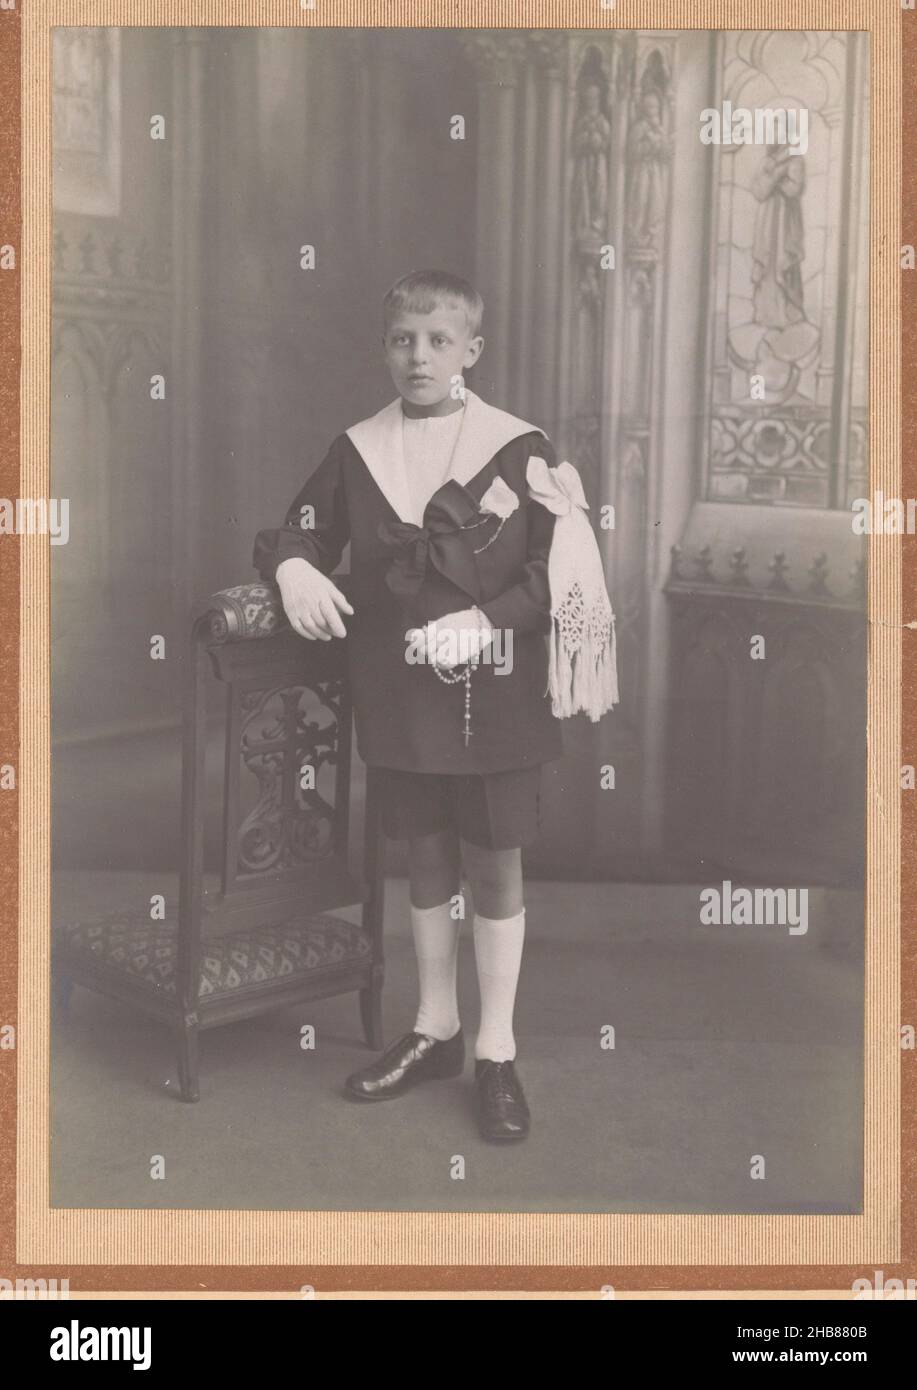 Portrait d'un communicant inconnu, J. le bris (mentionné sur l'objet), Paris, c.1910 - c.1930, support photographique, carton, imprimé gélatine-argent, hauteur 150 mm × largeur 104 mm Banque D'Images